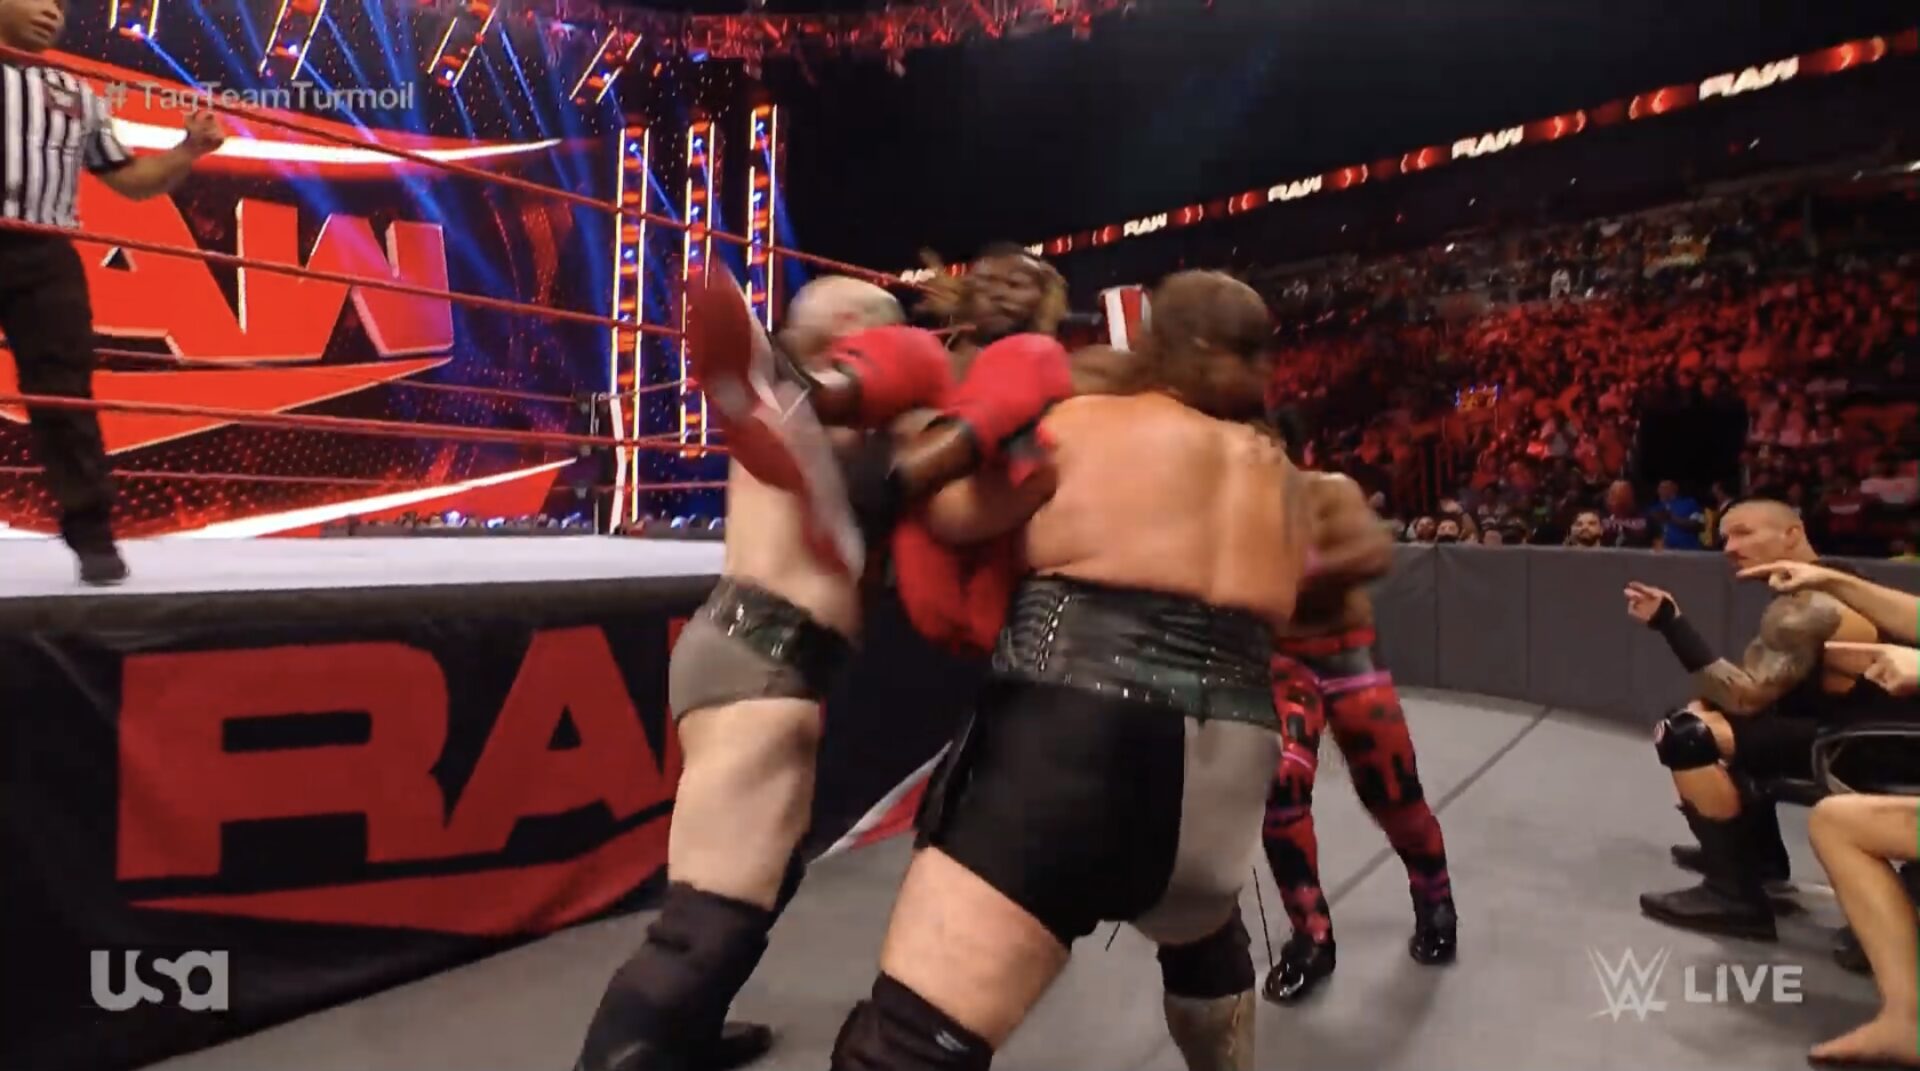 raw tag team turmoil